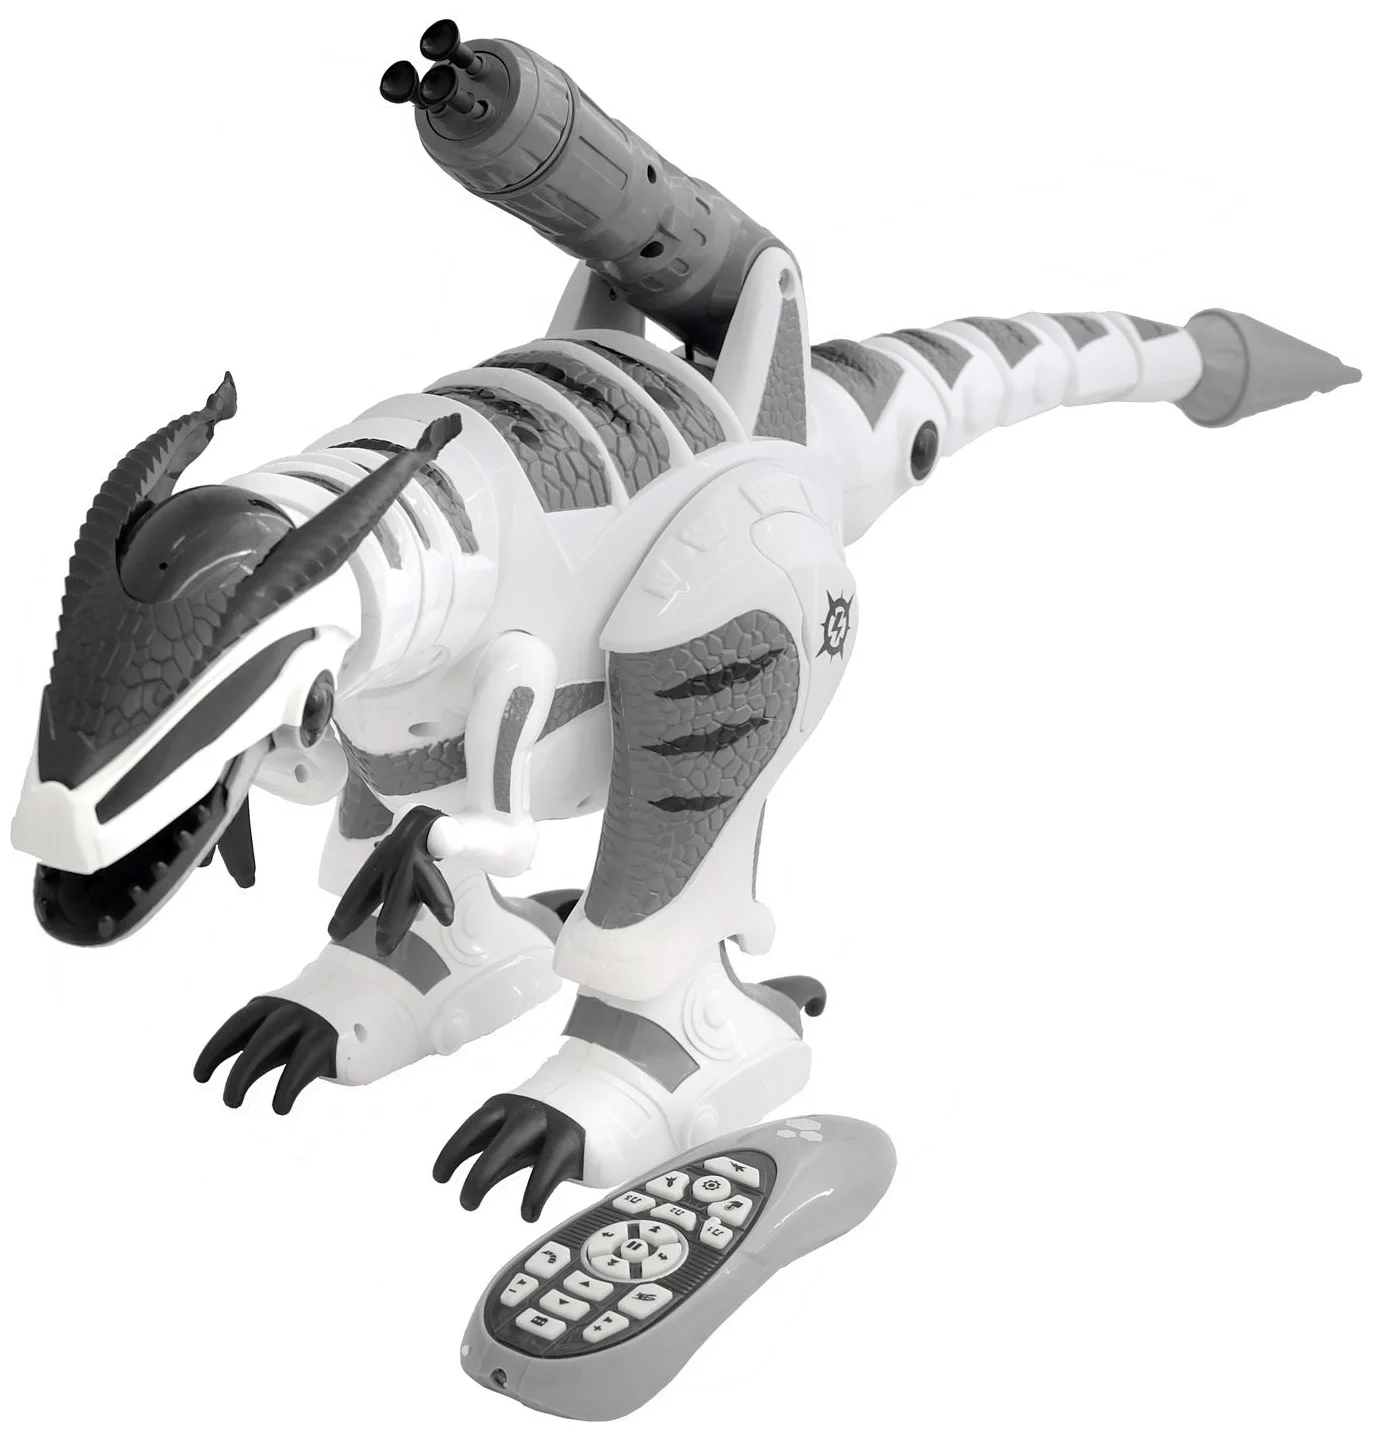 Le Neng Toys Intelligent Dinosaur K9 - особенности: программируемая игрушка, пульт ДУ в комплекте